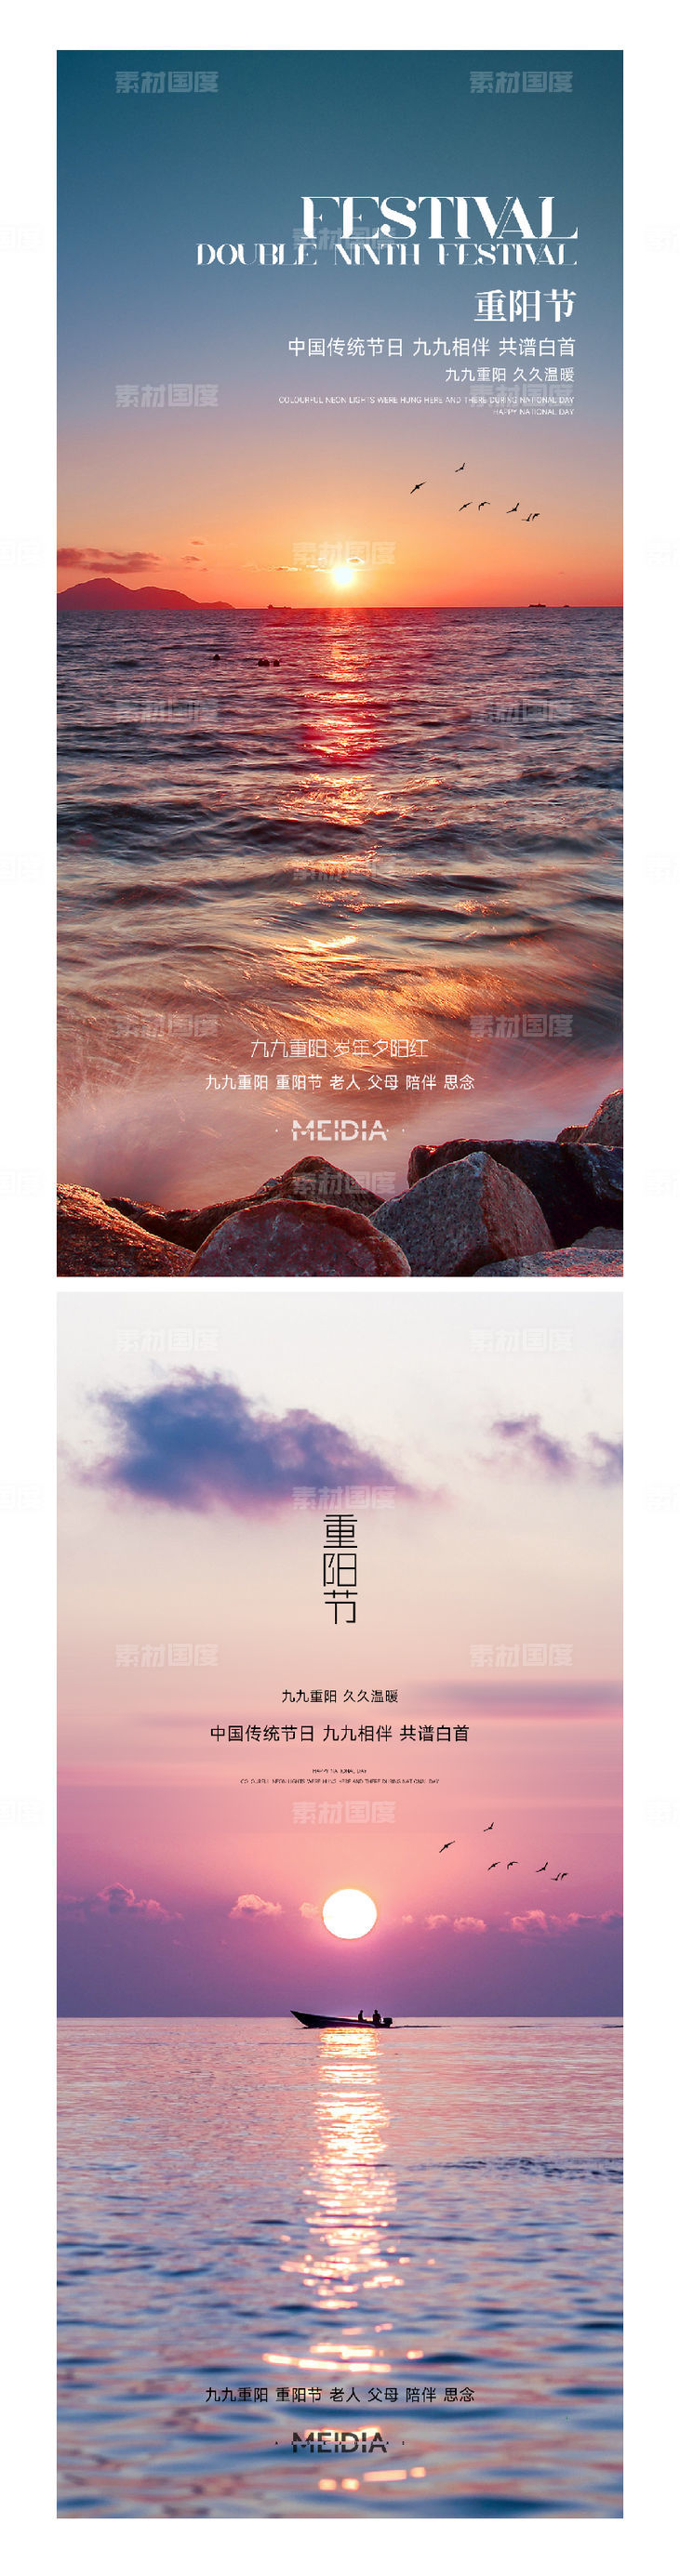 中国风古风概念大气重阳节节日系列海报